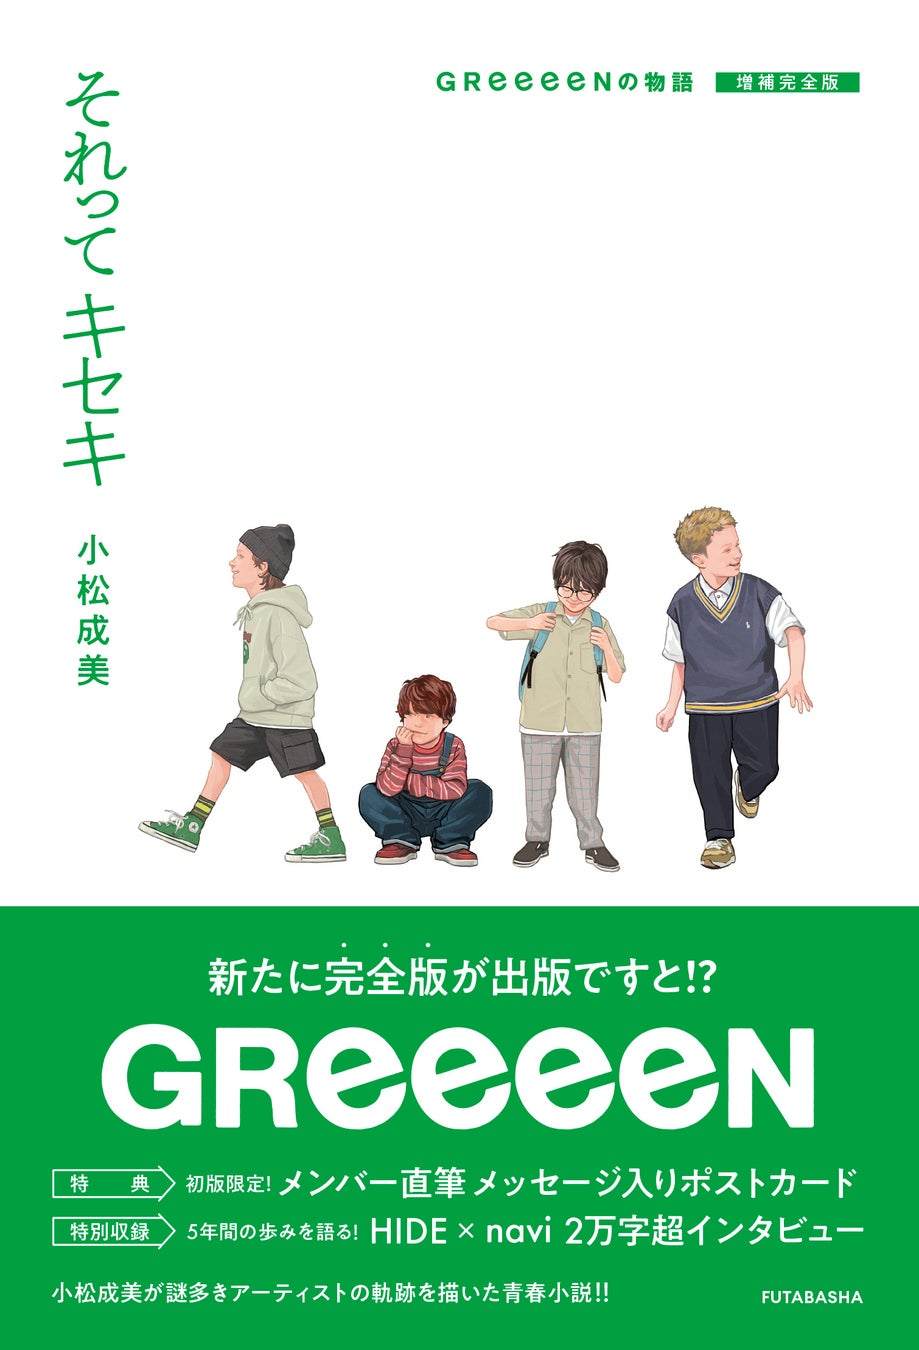 ベストセラーノンフィクション作家・小松成美による感動青春小説が『それってキセキ GReeeeNの物語 増補完全版』として復刊！